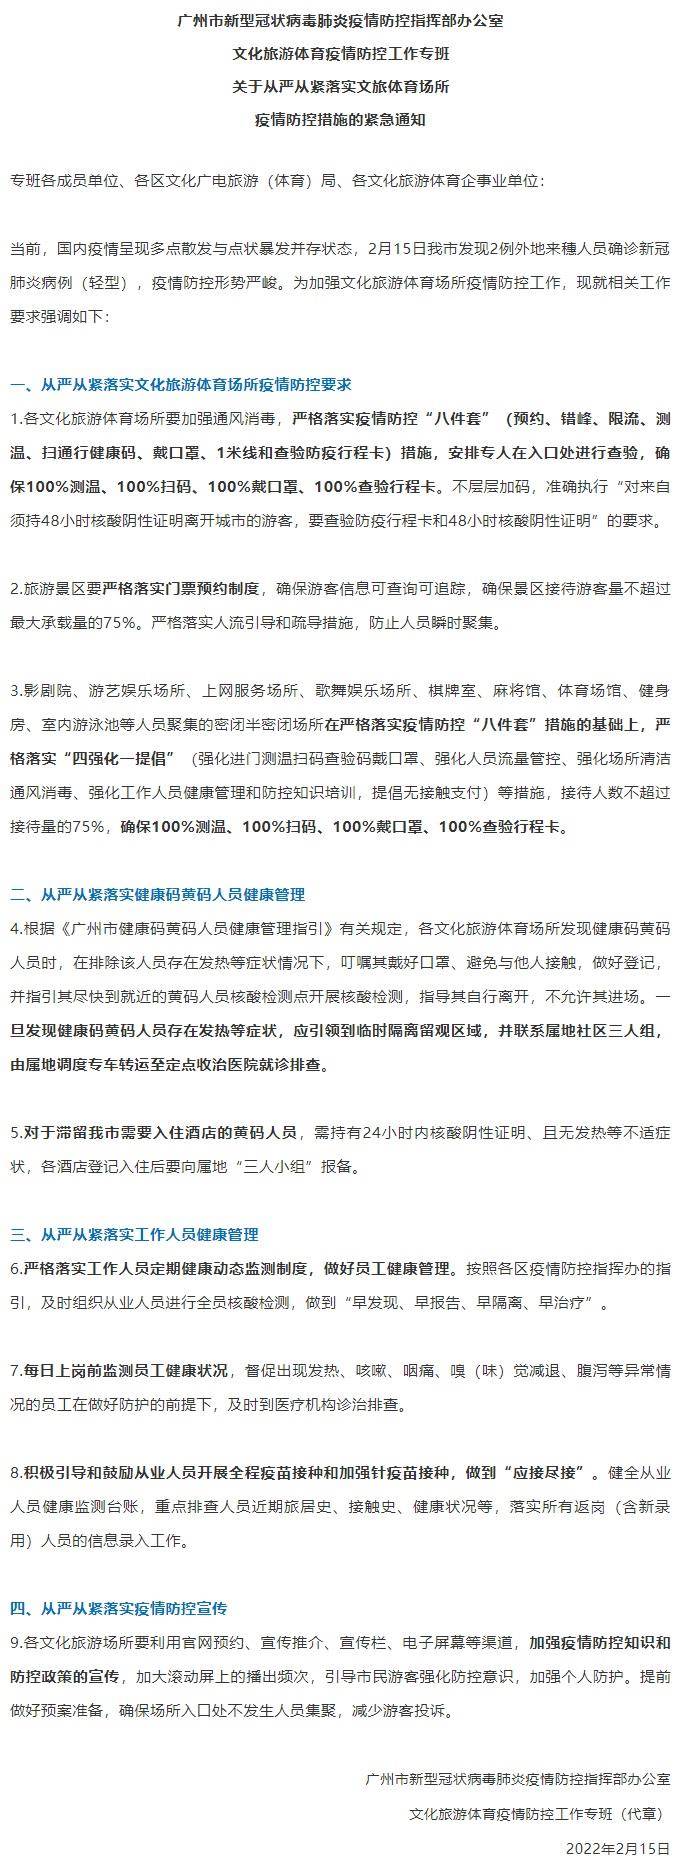 广州|广州下发紧急通知强化疫情防控 景区游客不超过最大承载量的75%